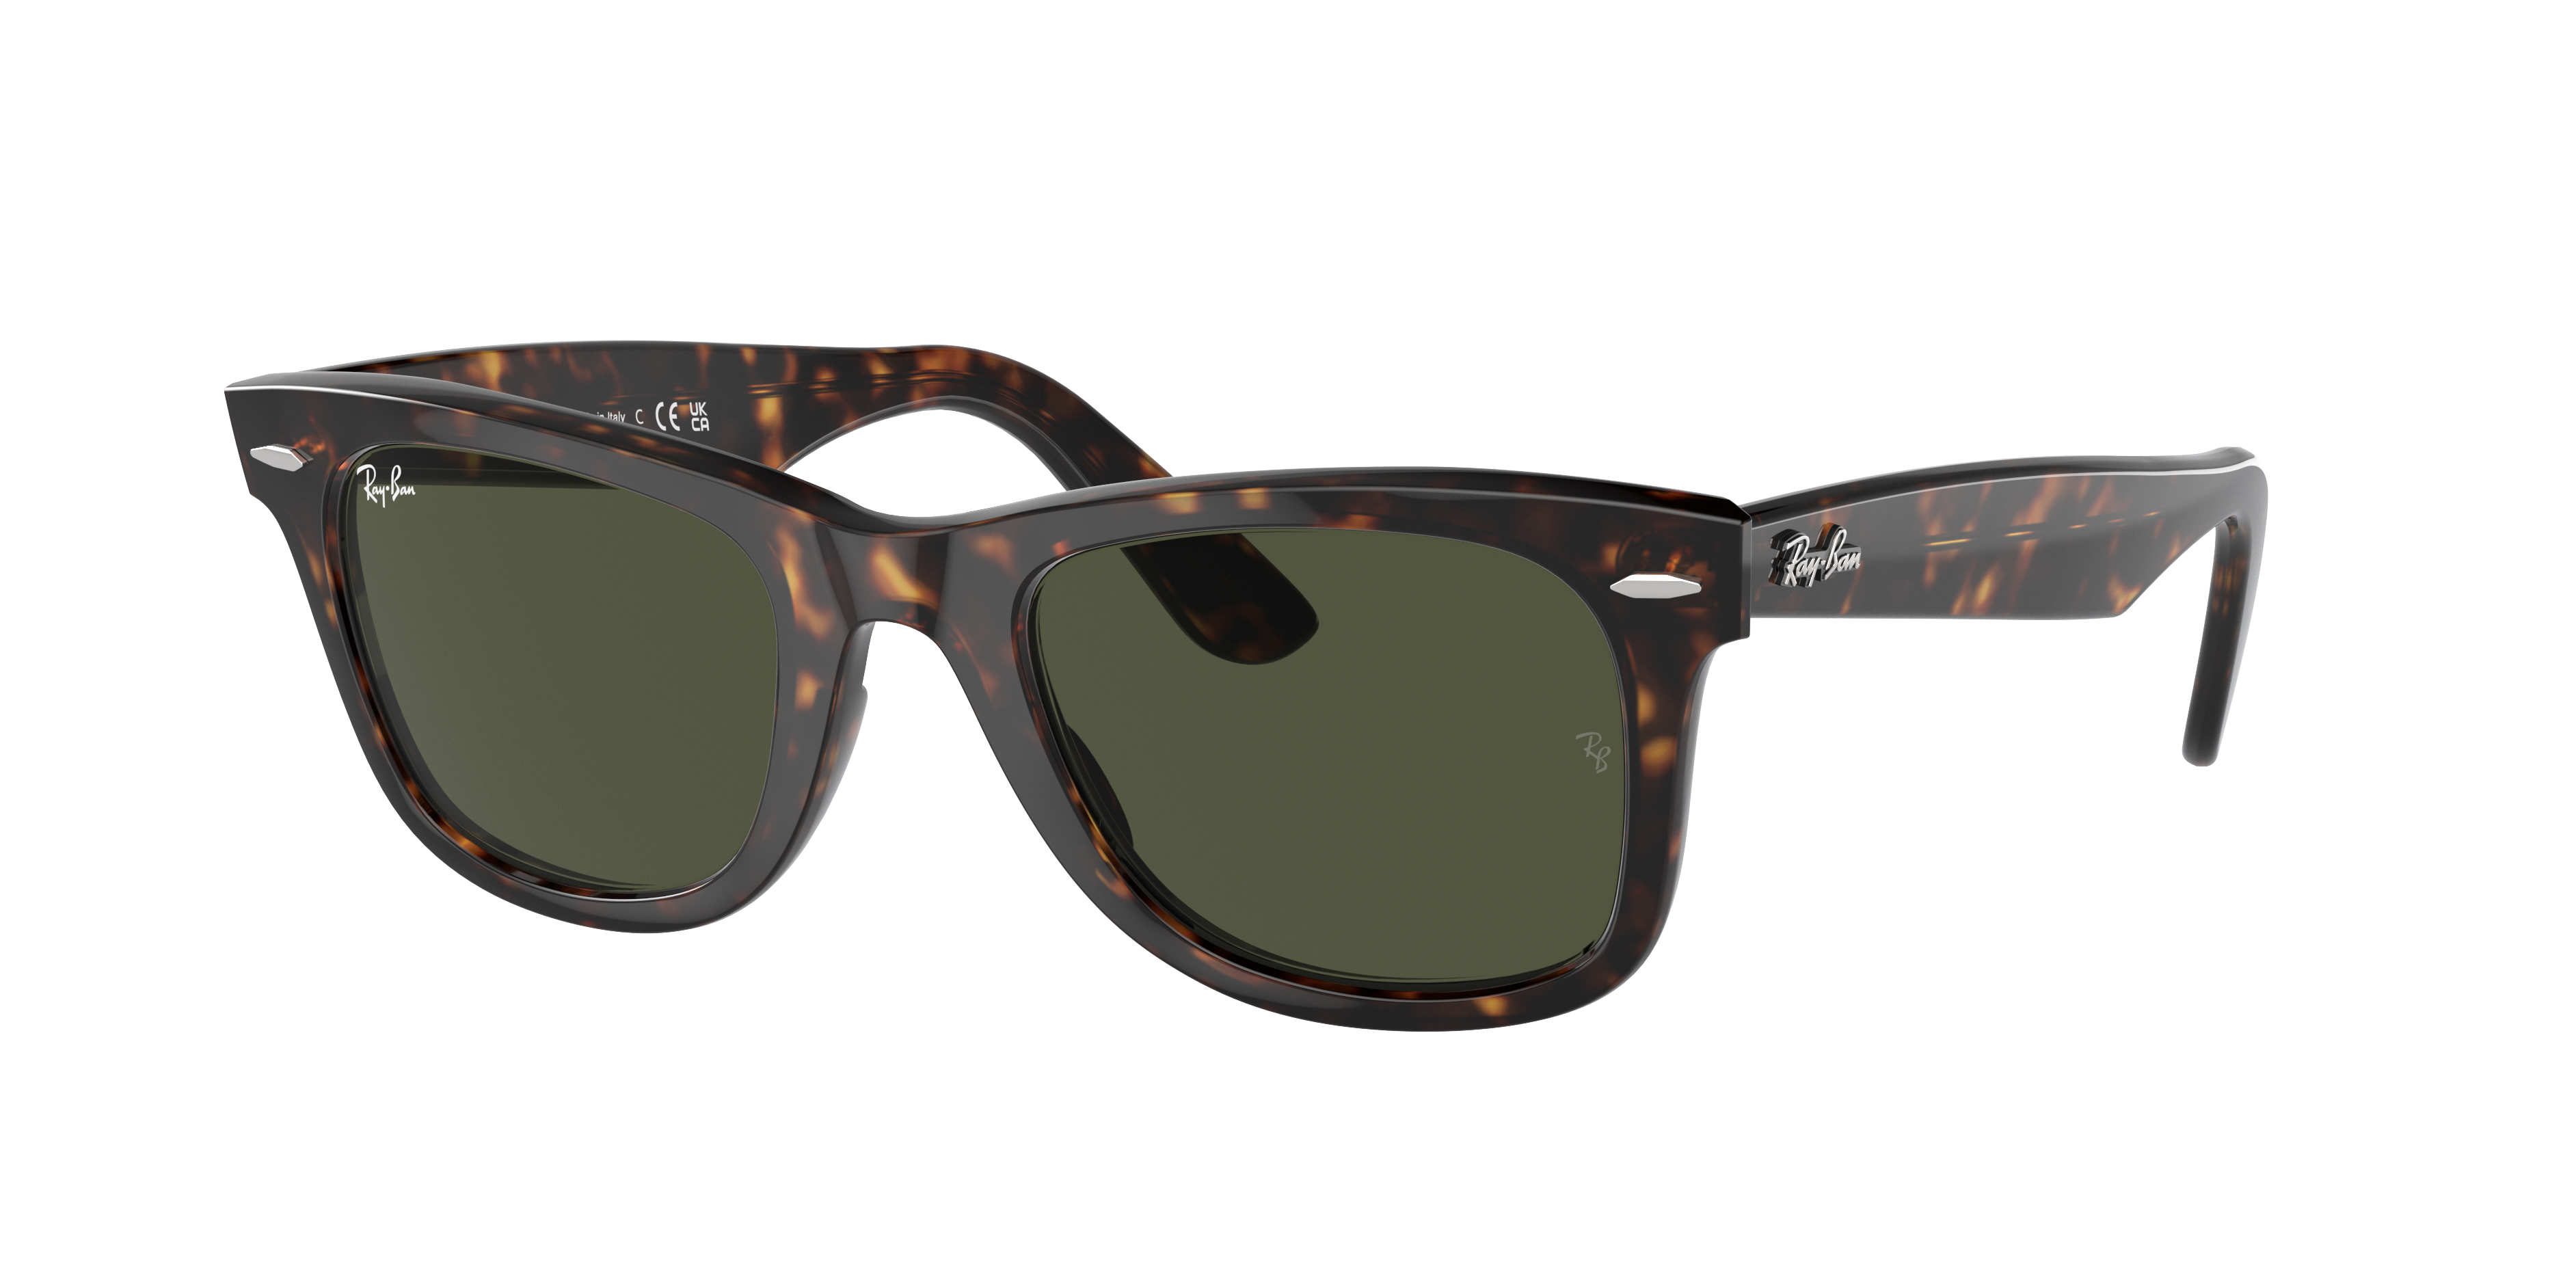 Gewoon overlopen wijsheid rivier Original Wayfarer Classic Sunglasses in Tortoise and Green | Ray-Ban®